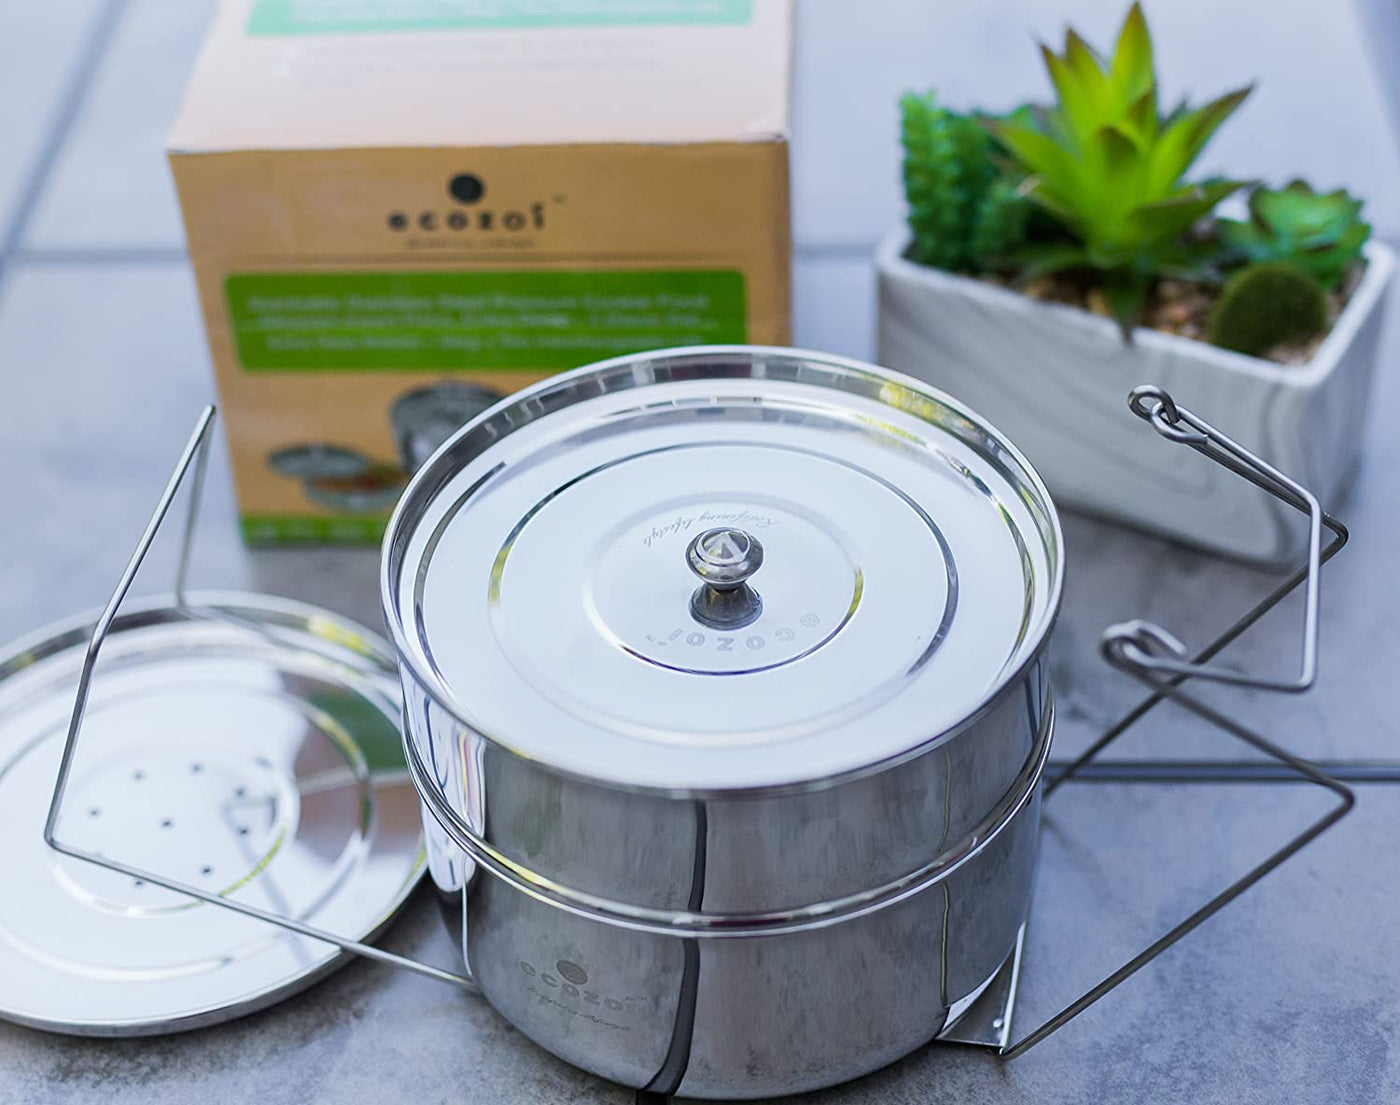 Instant Pot Insert Pans, 2 Tier for 3 Qt / 5 Qt Pressure Cookers